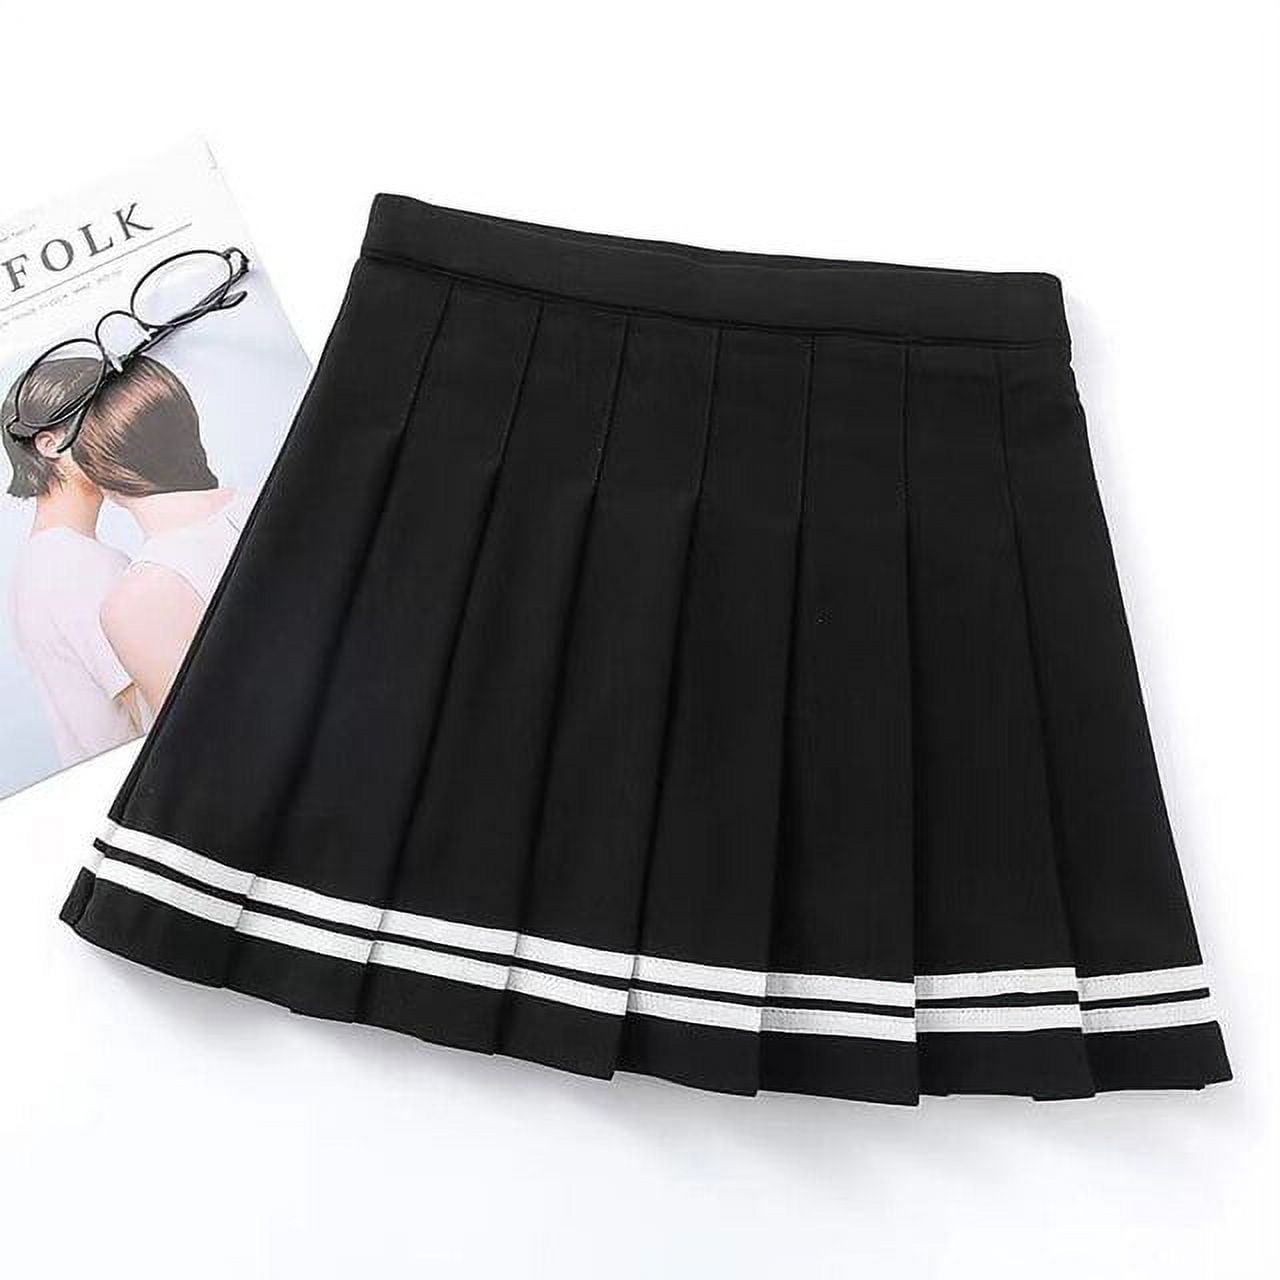 darlene booker recommends Japanese Girls Short Skirts